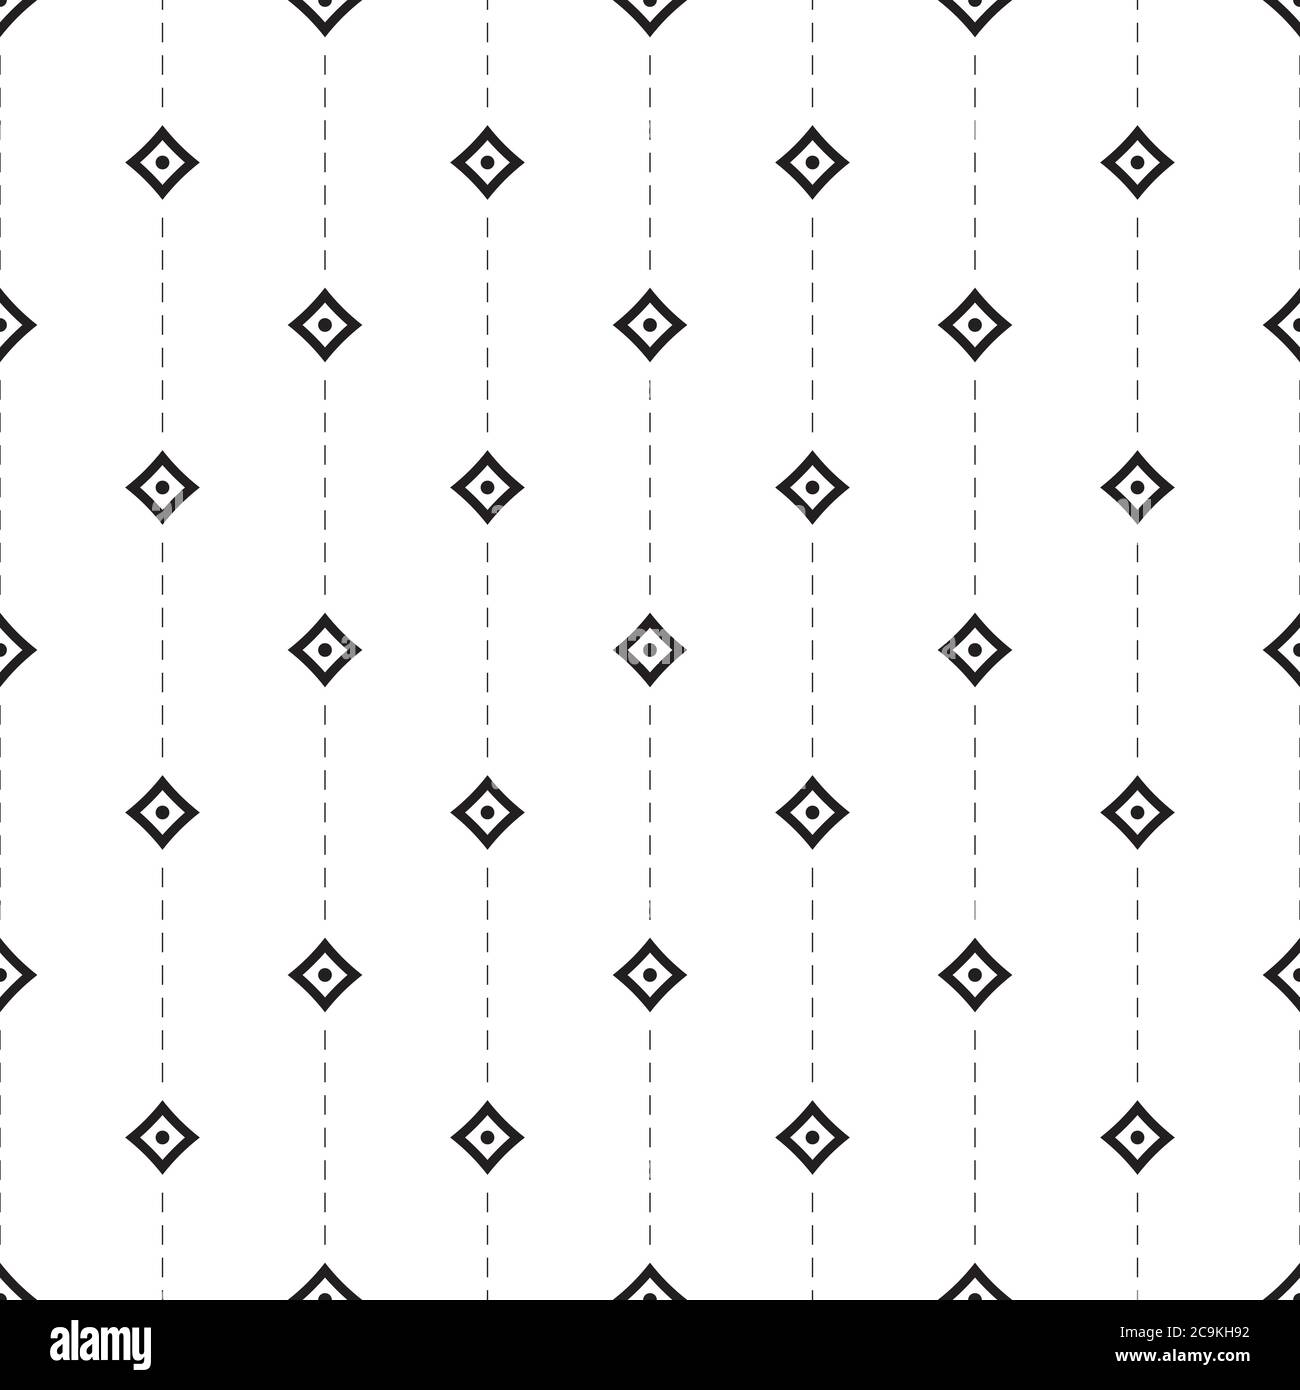 Nahtloses geometrisches Muster. Abstrakter nahtloser Hintergrund mit gepunkteter und gekreuzter Linie. Geometrische Formen, Kreuz, Kreis, Raute, diagonale gepunktete Linie. Stock Vektor